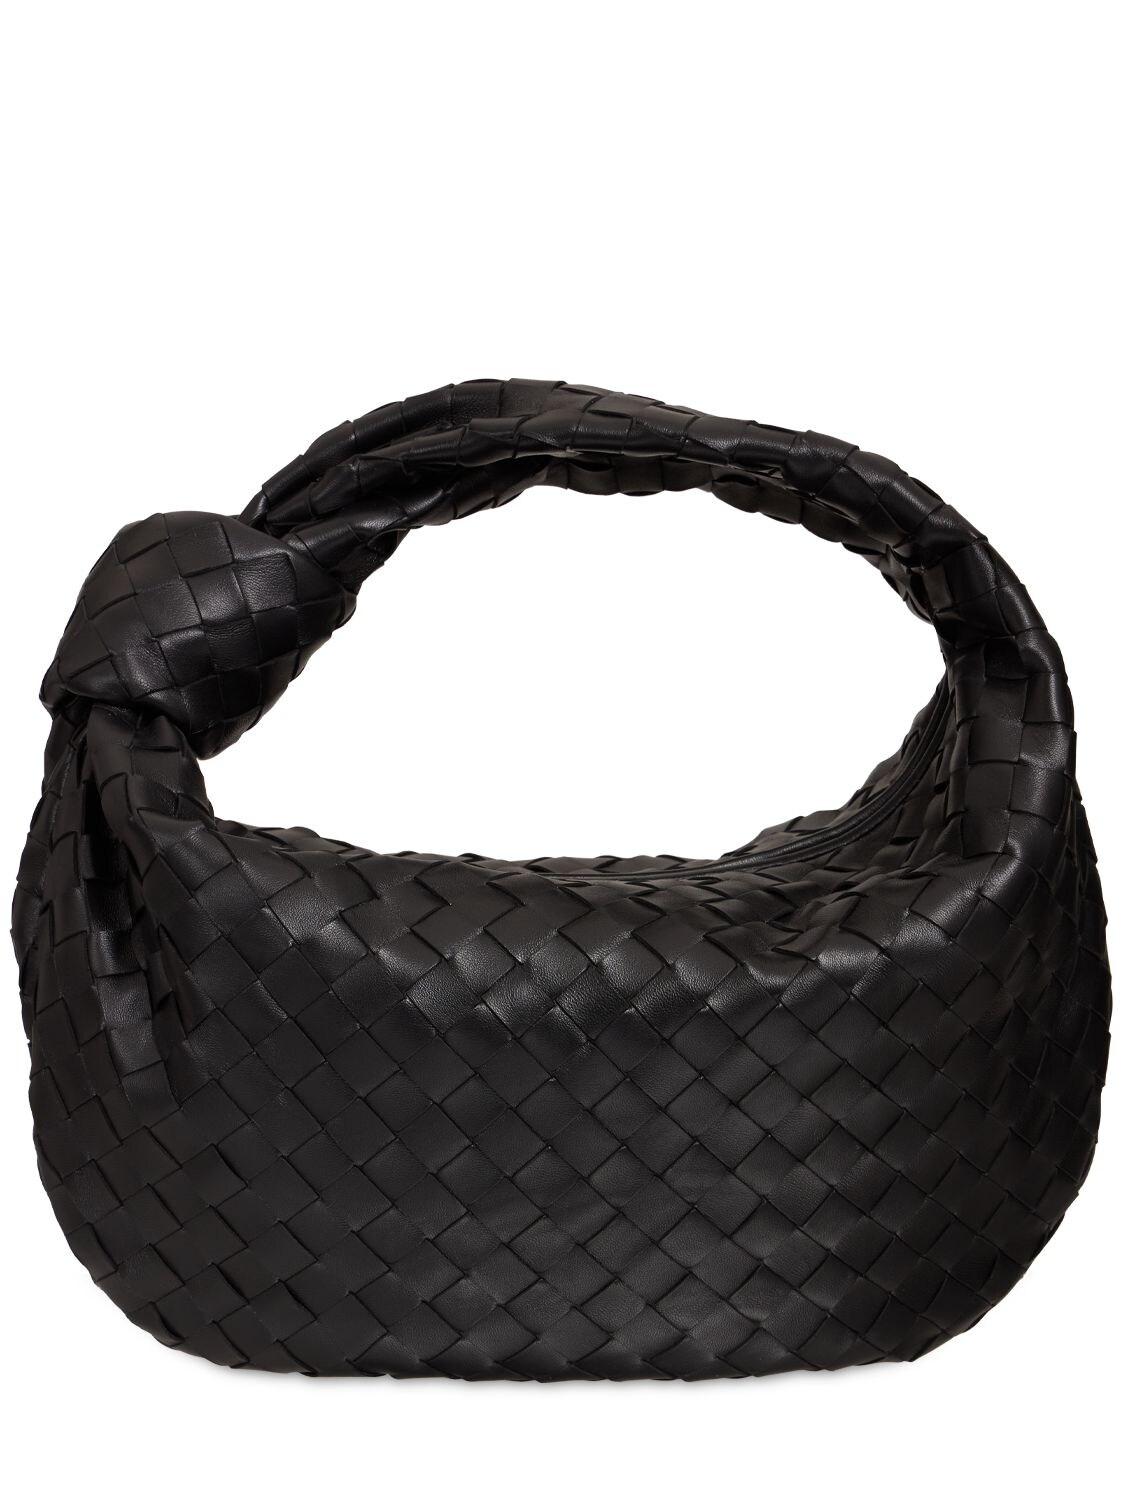 Bottega Veneta Teen Jodie Leather Bag in Black | Lyst